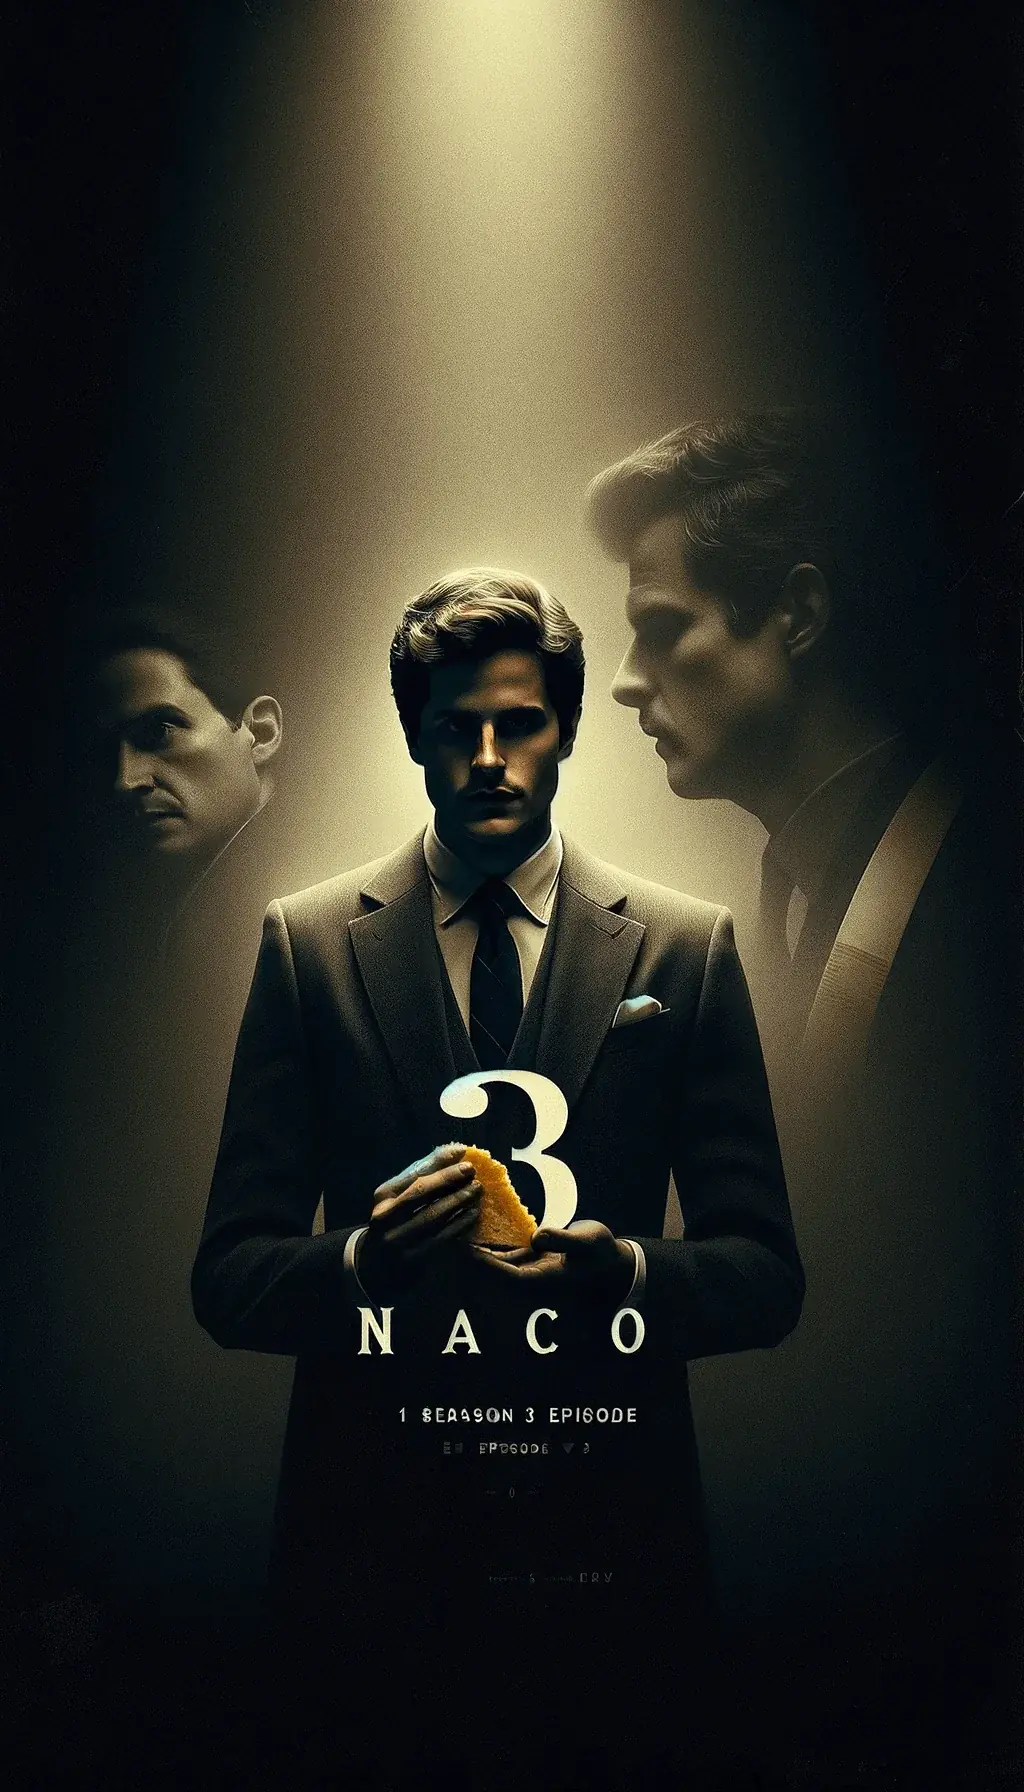 Третий эпизод Начо первого сезона сериала, мужчина в костюме с тако в руках, затемненные фигуры, цифра три